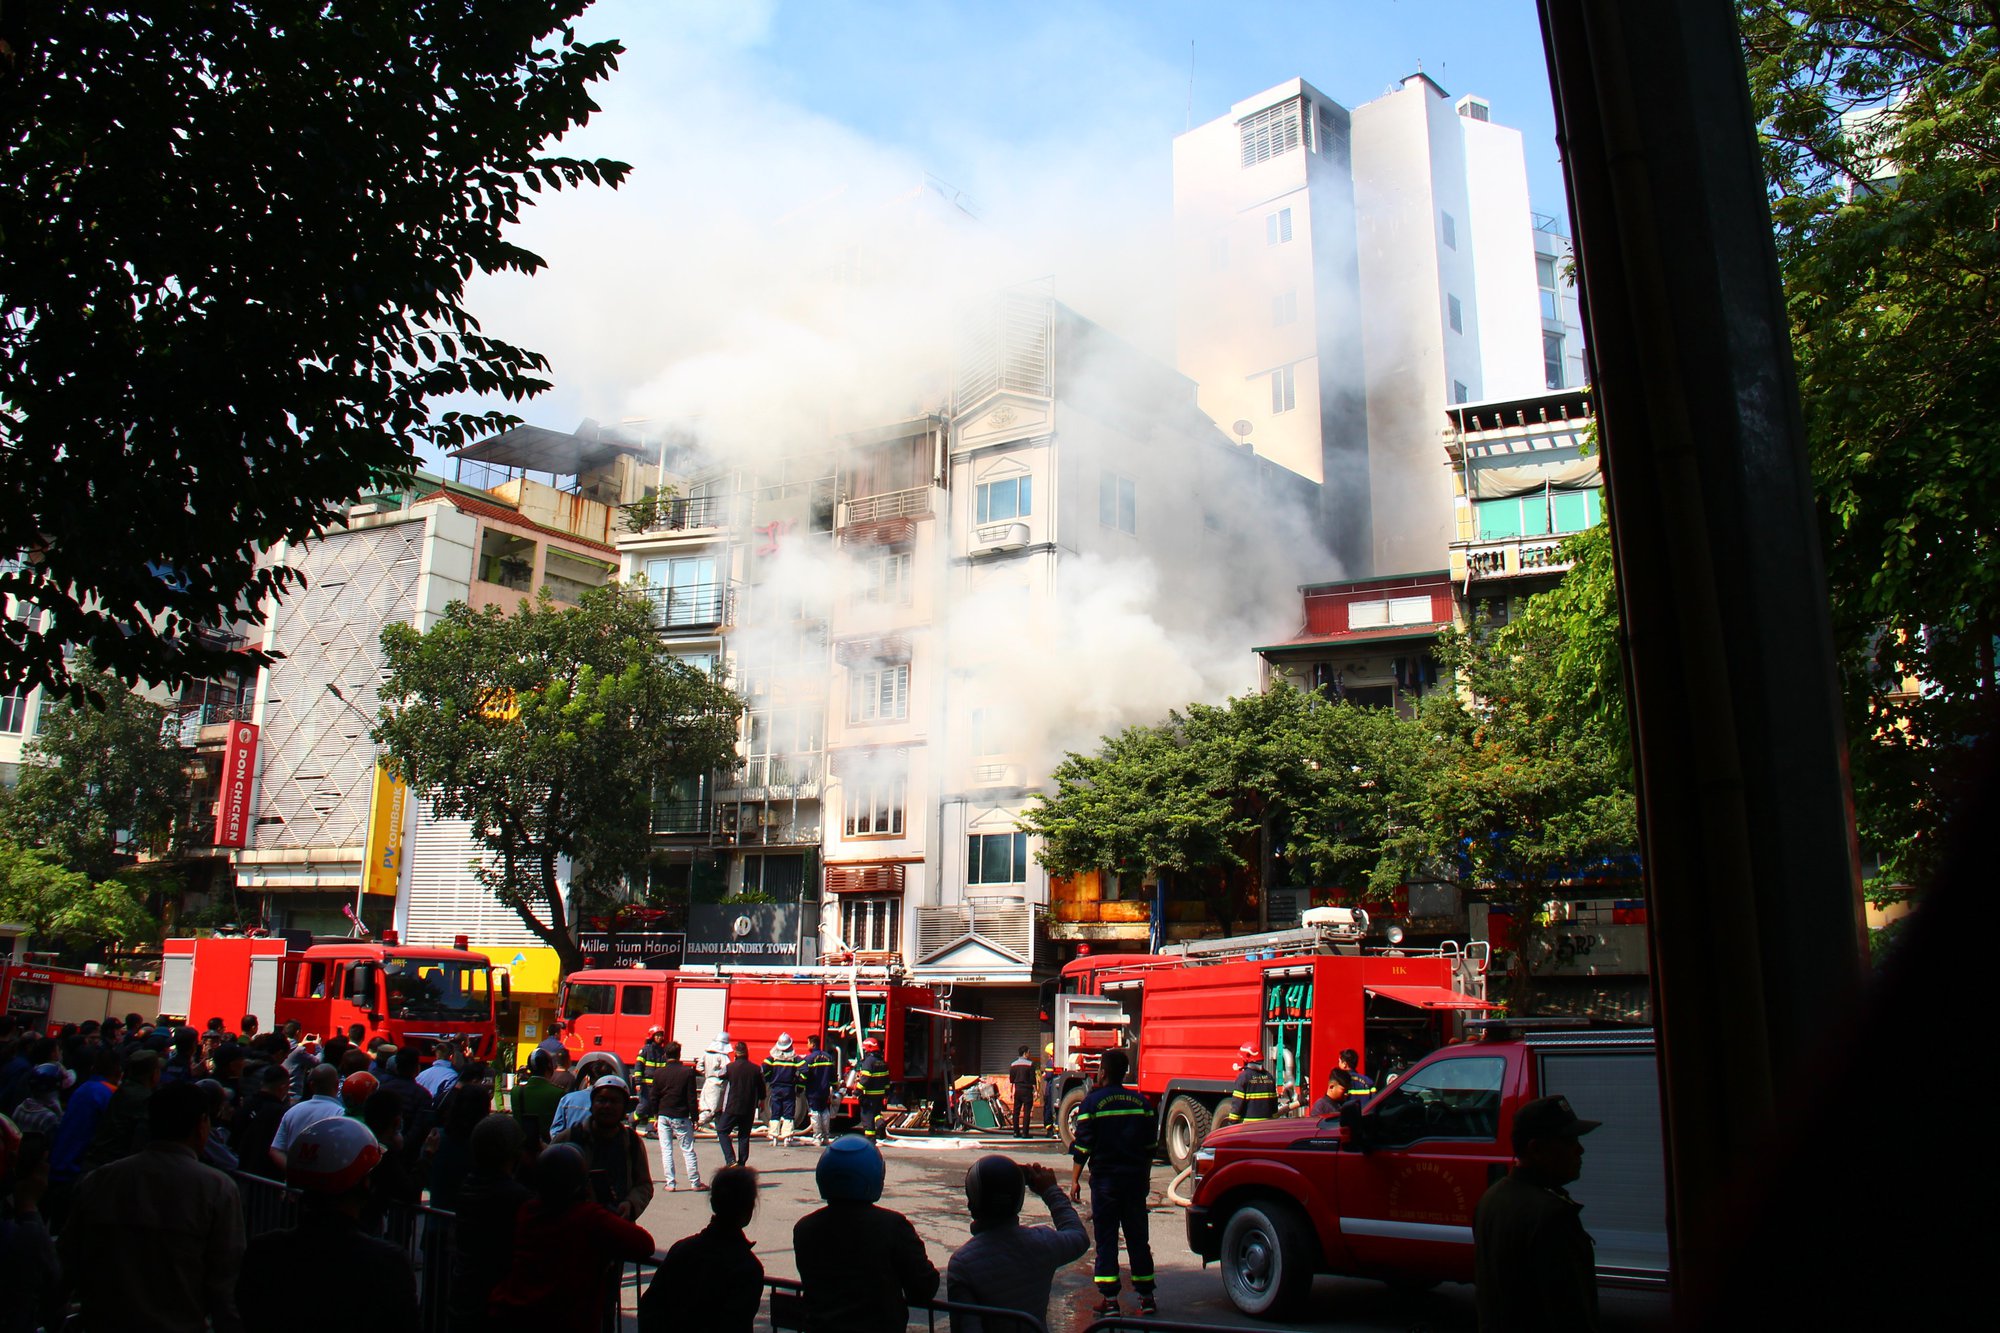 Cháy lớn tại cửa hàng tranh trên phố cổ Hà Nội, 4 người kịp thoát thân - Ảnh 2.